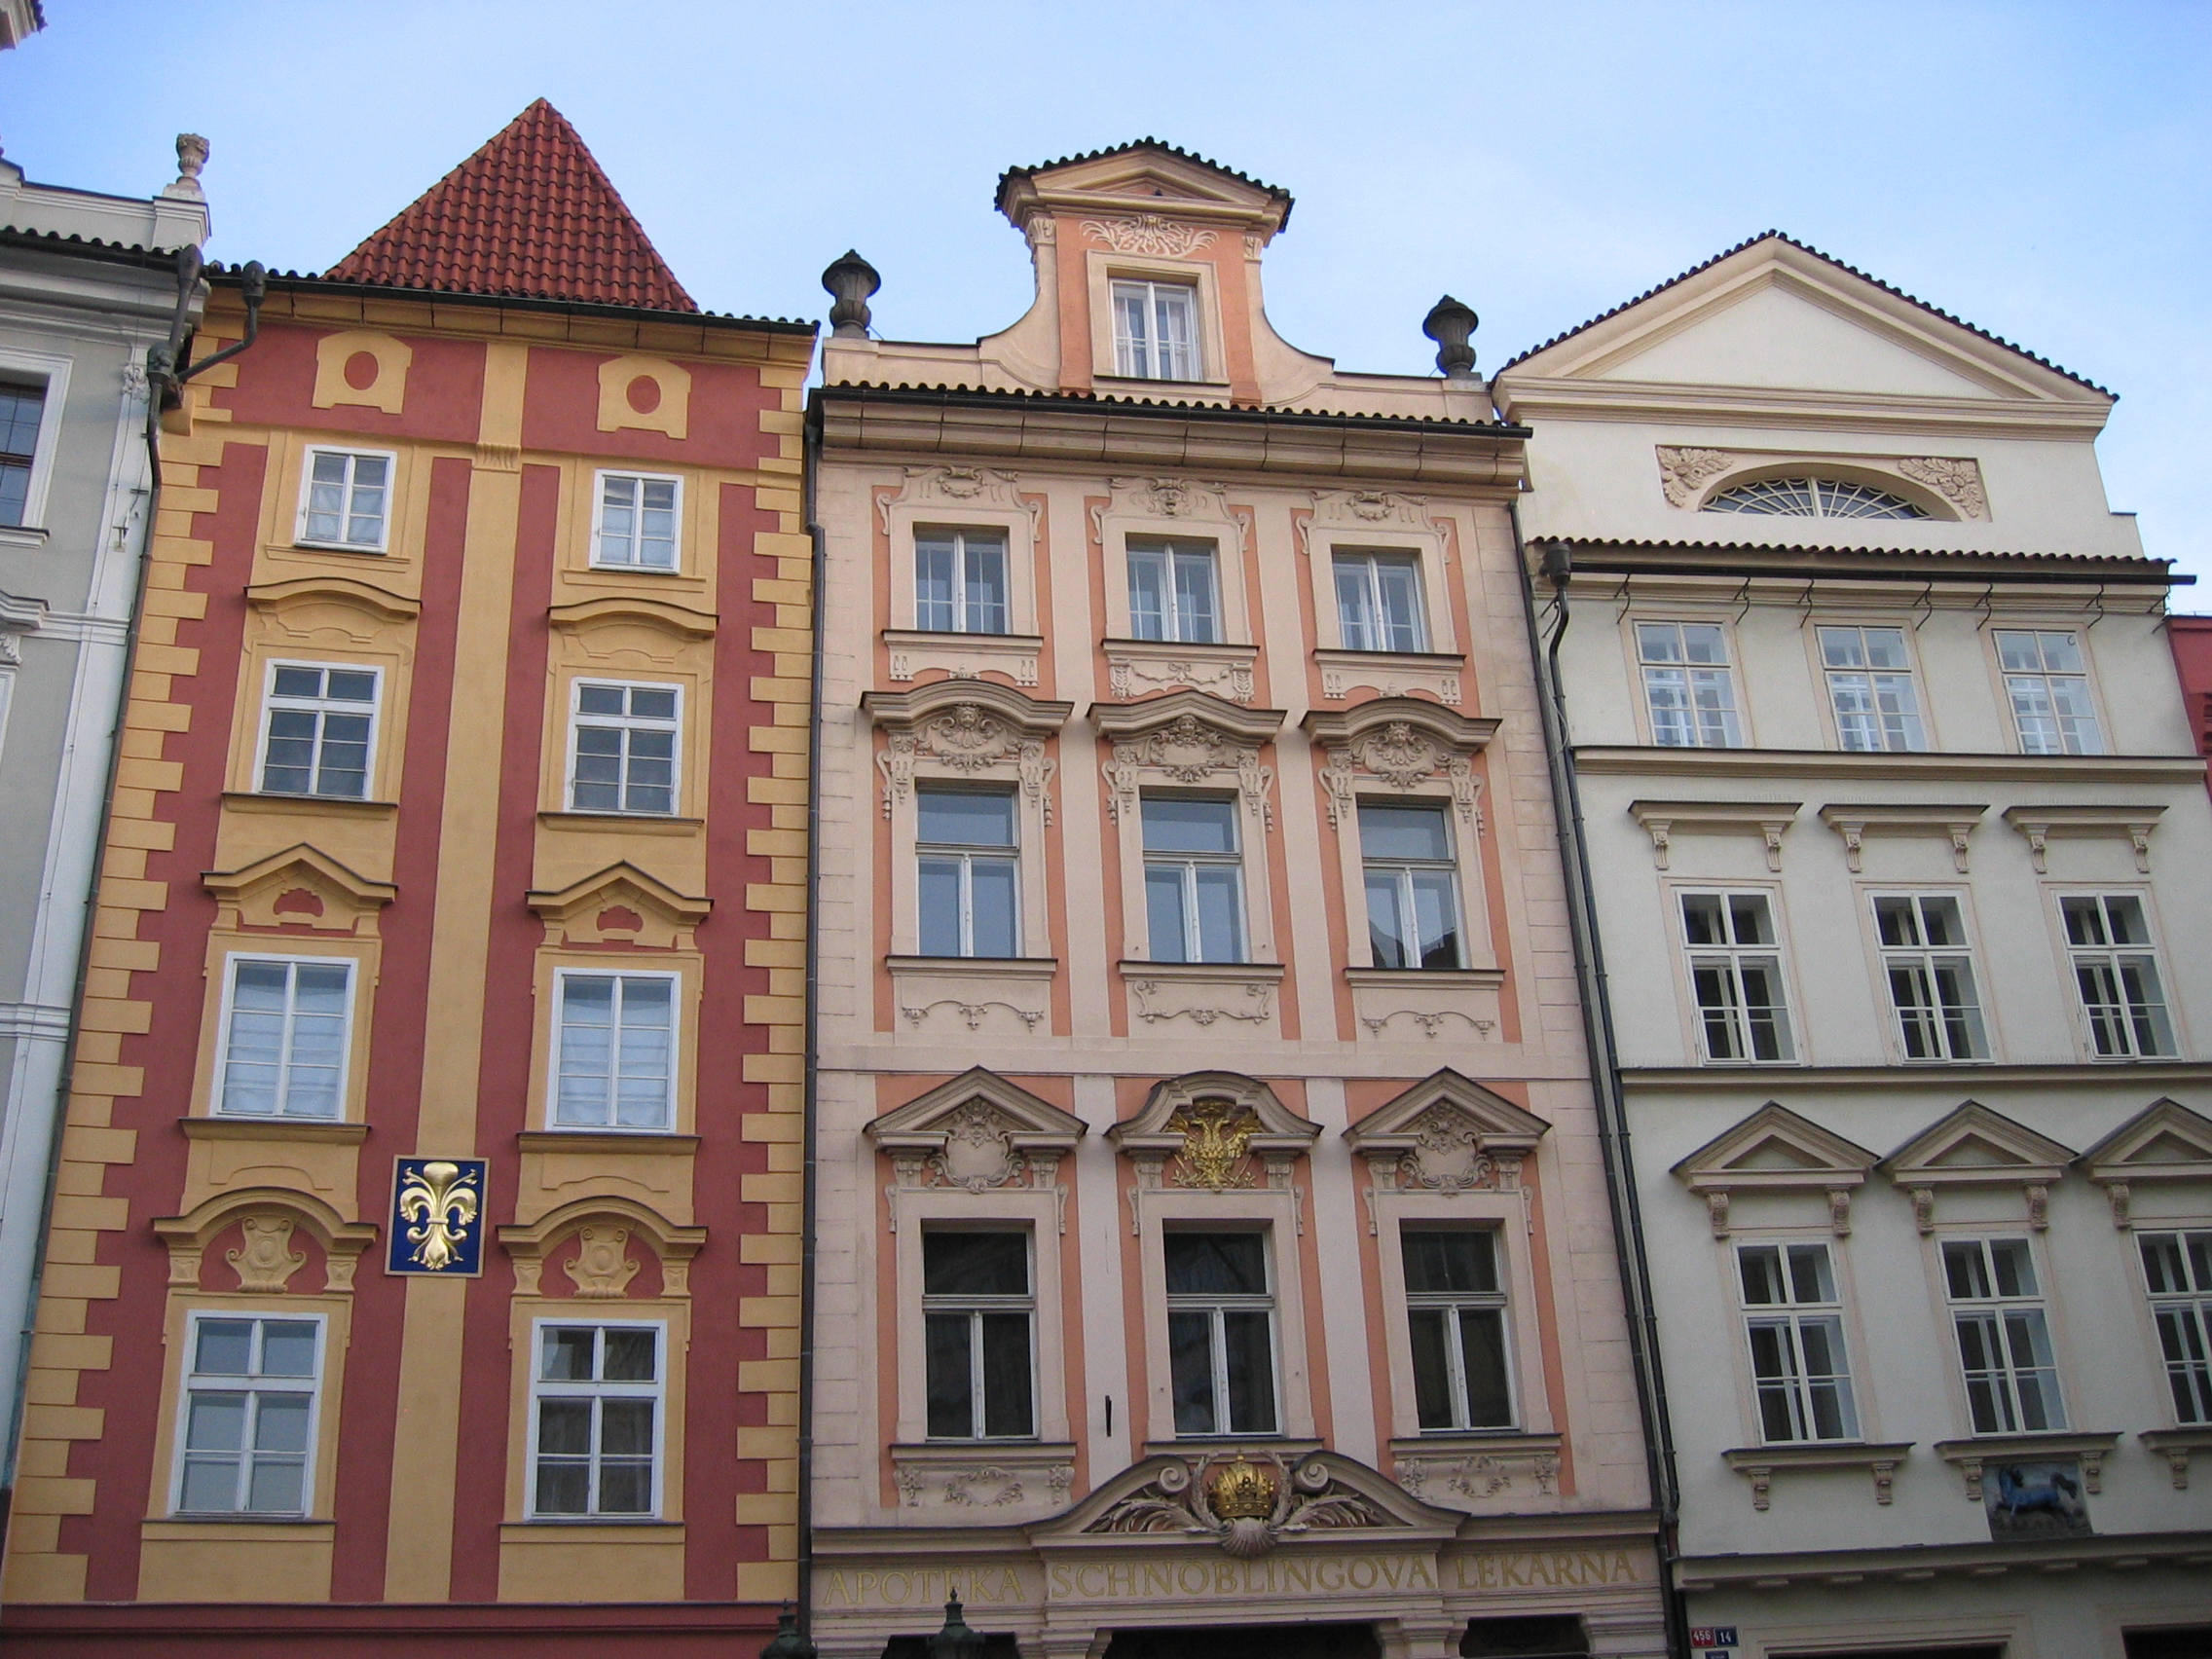 Praga, 2004. Fachadas